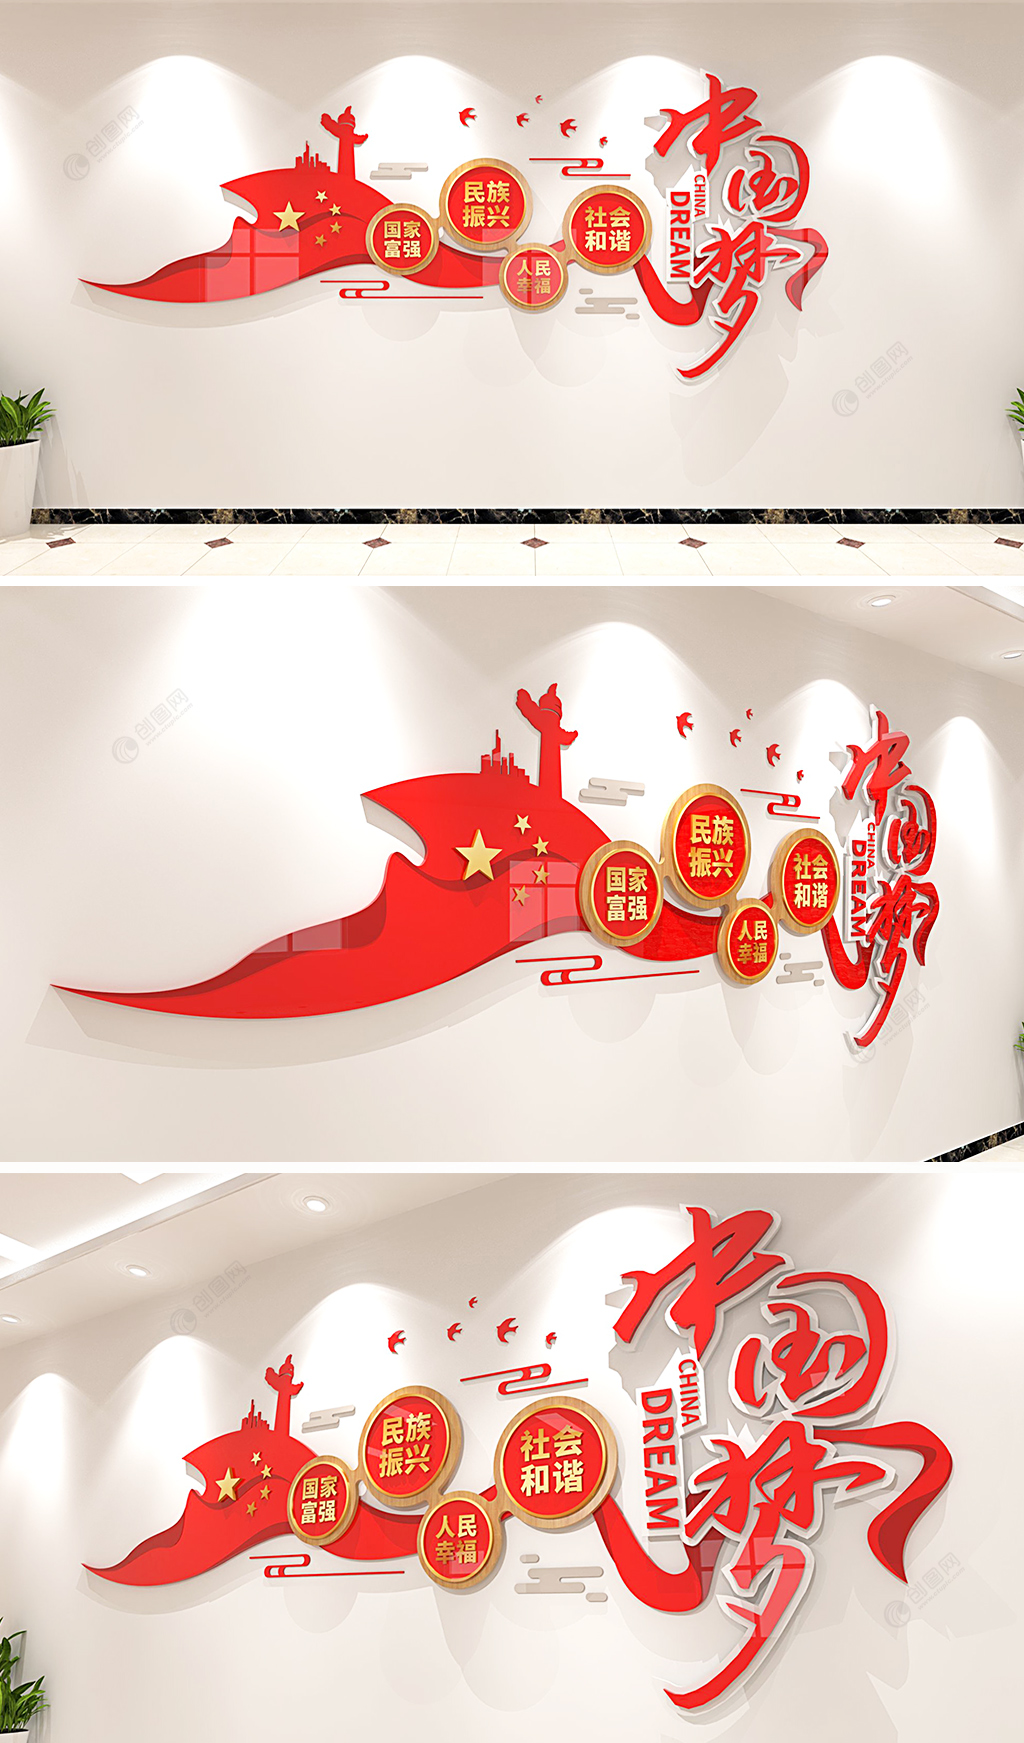 红色大气中国梦文化墙党建文化墙党员活动室文化墙创意设计